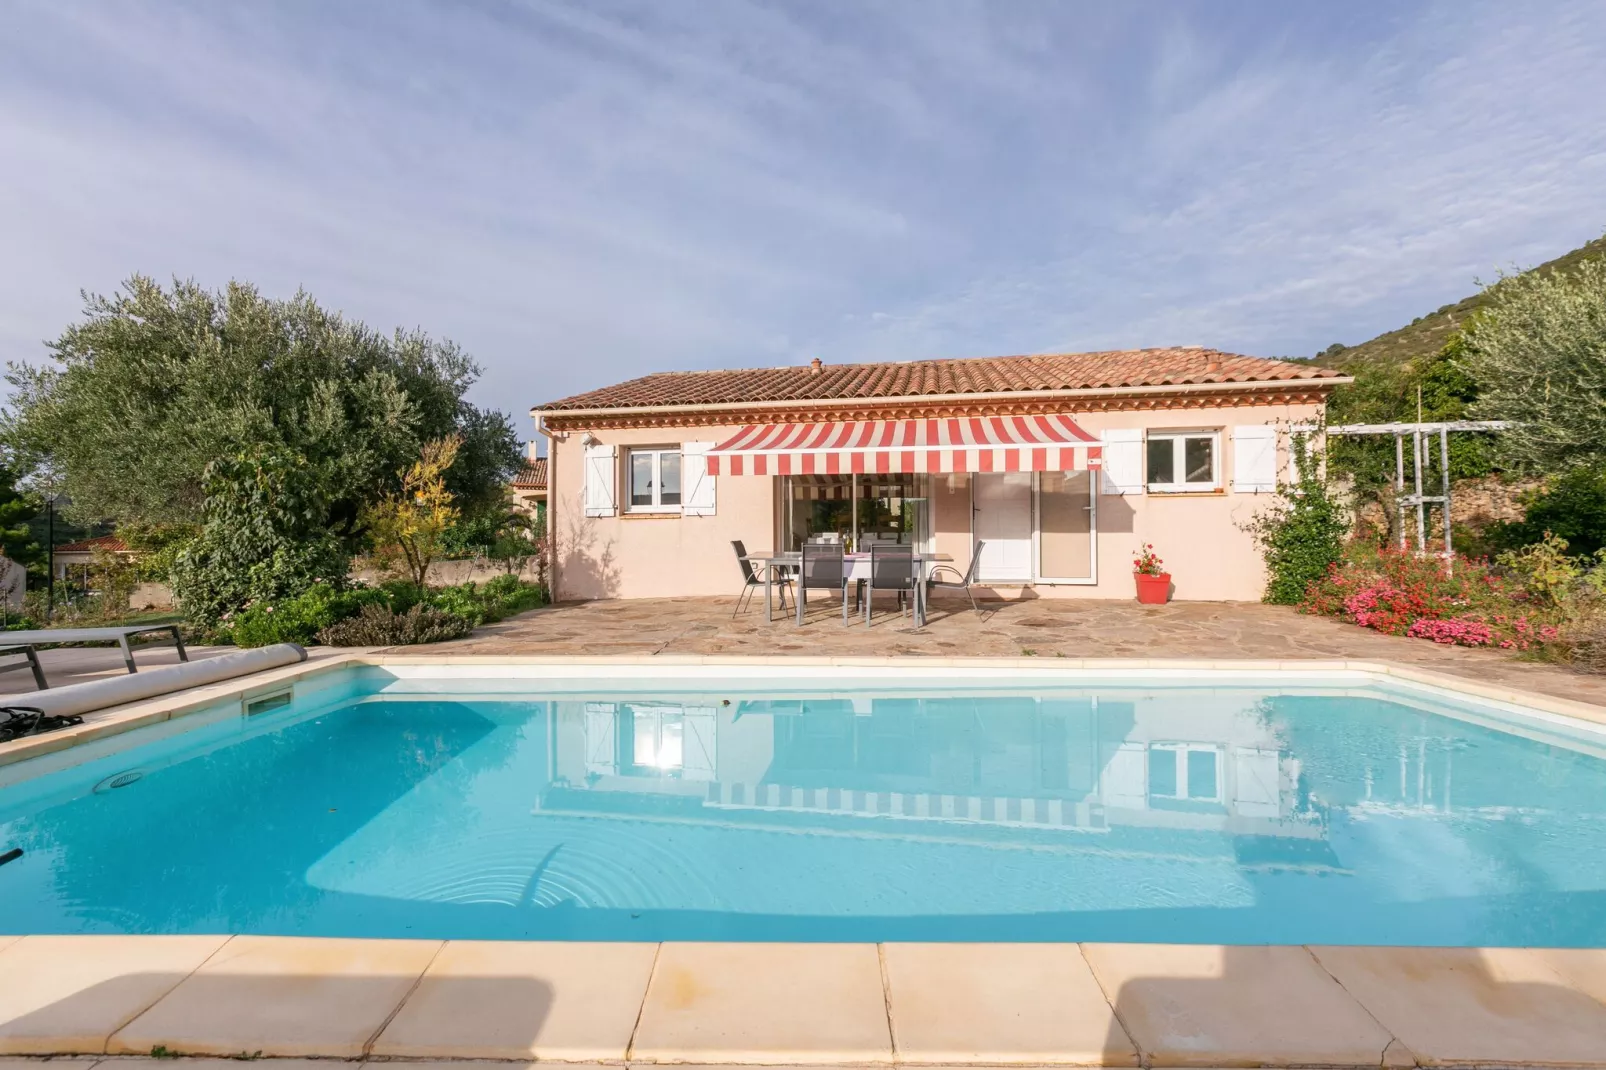 Huis in Zuid-Frankrijk met privé zwembad